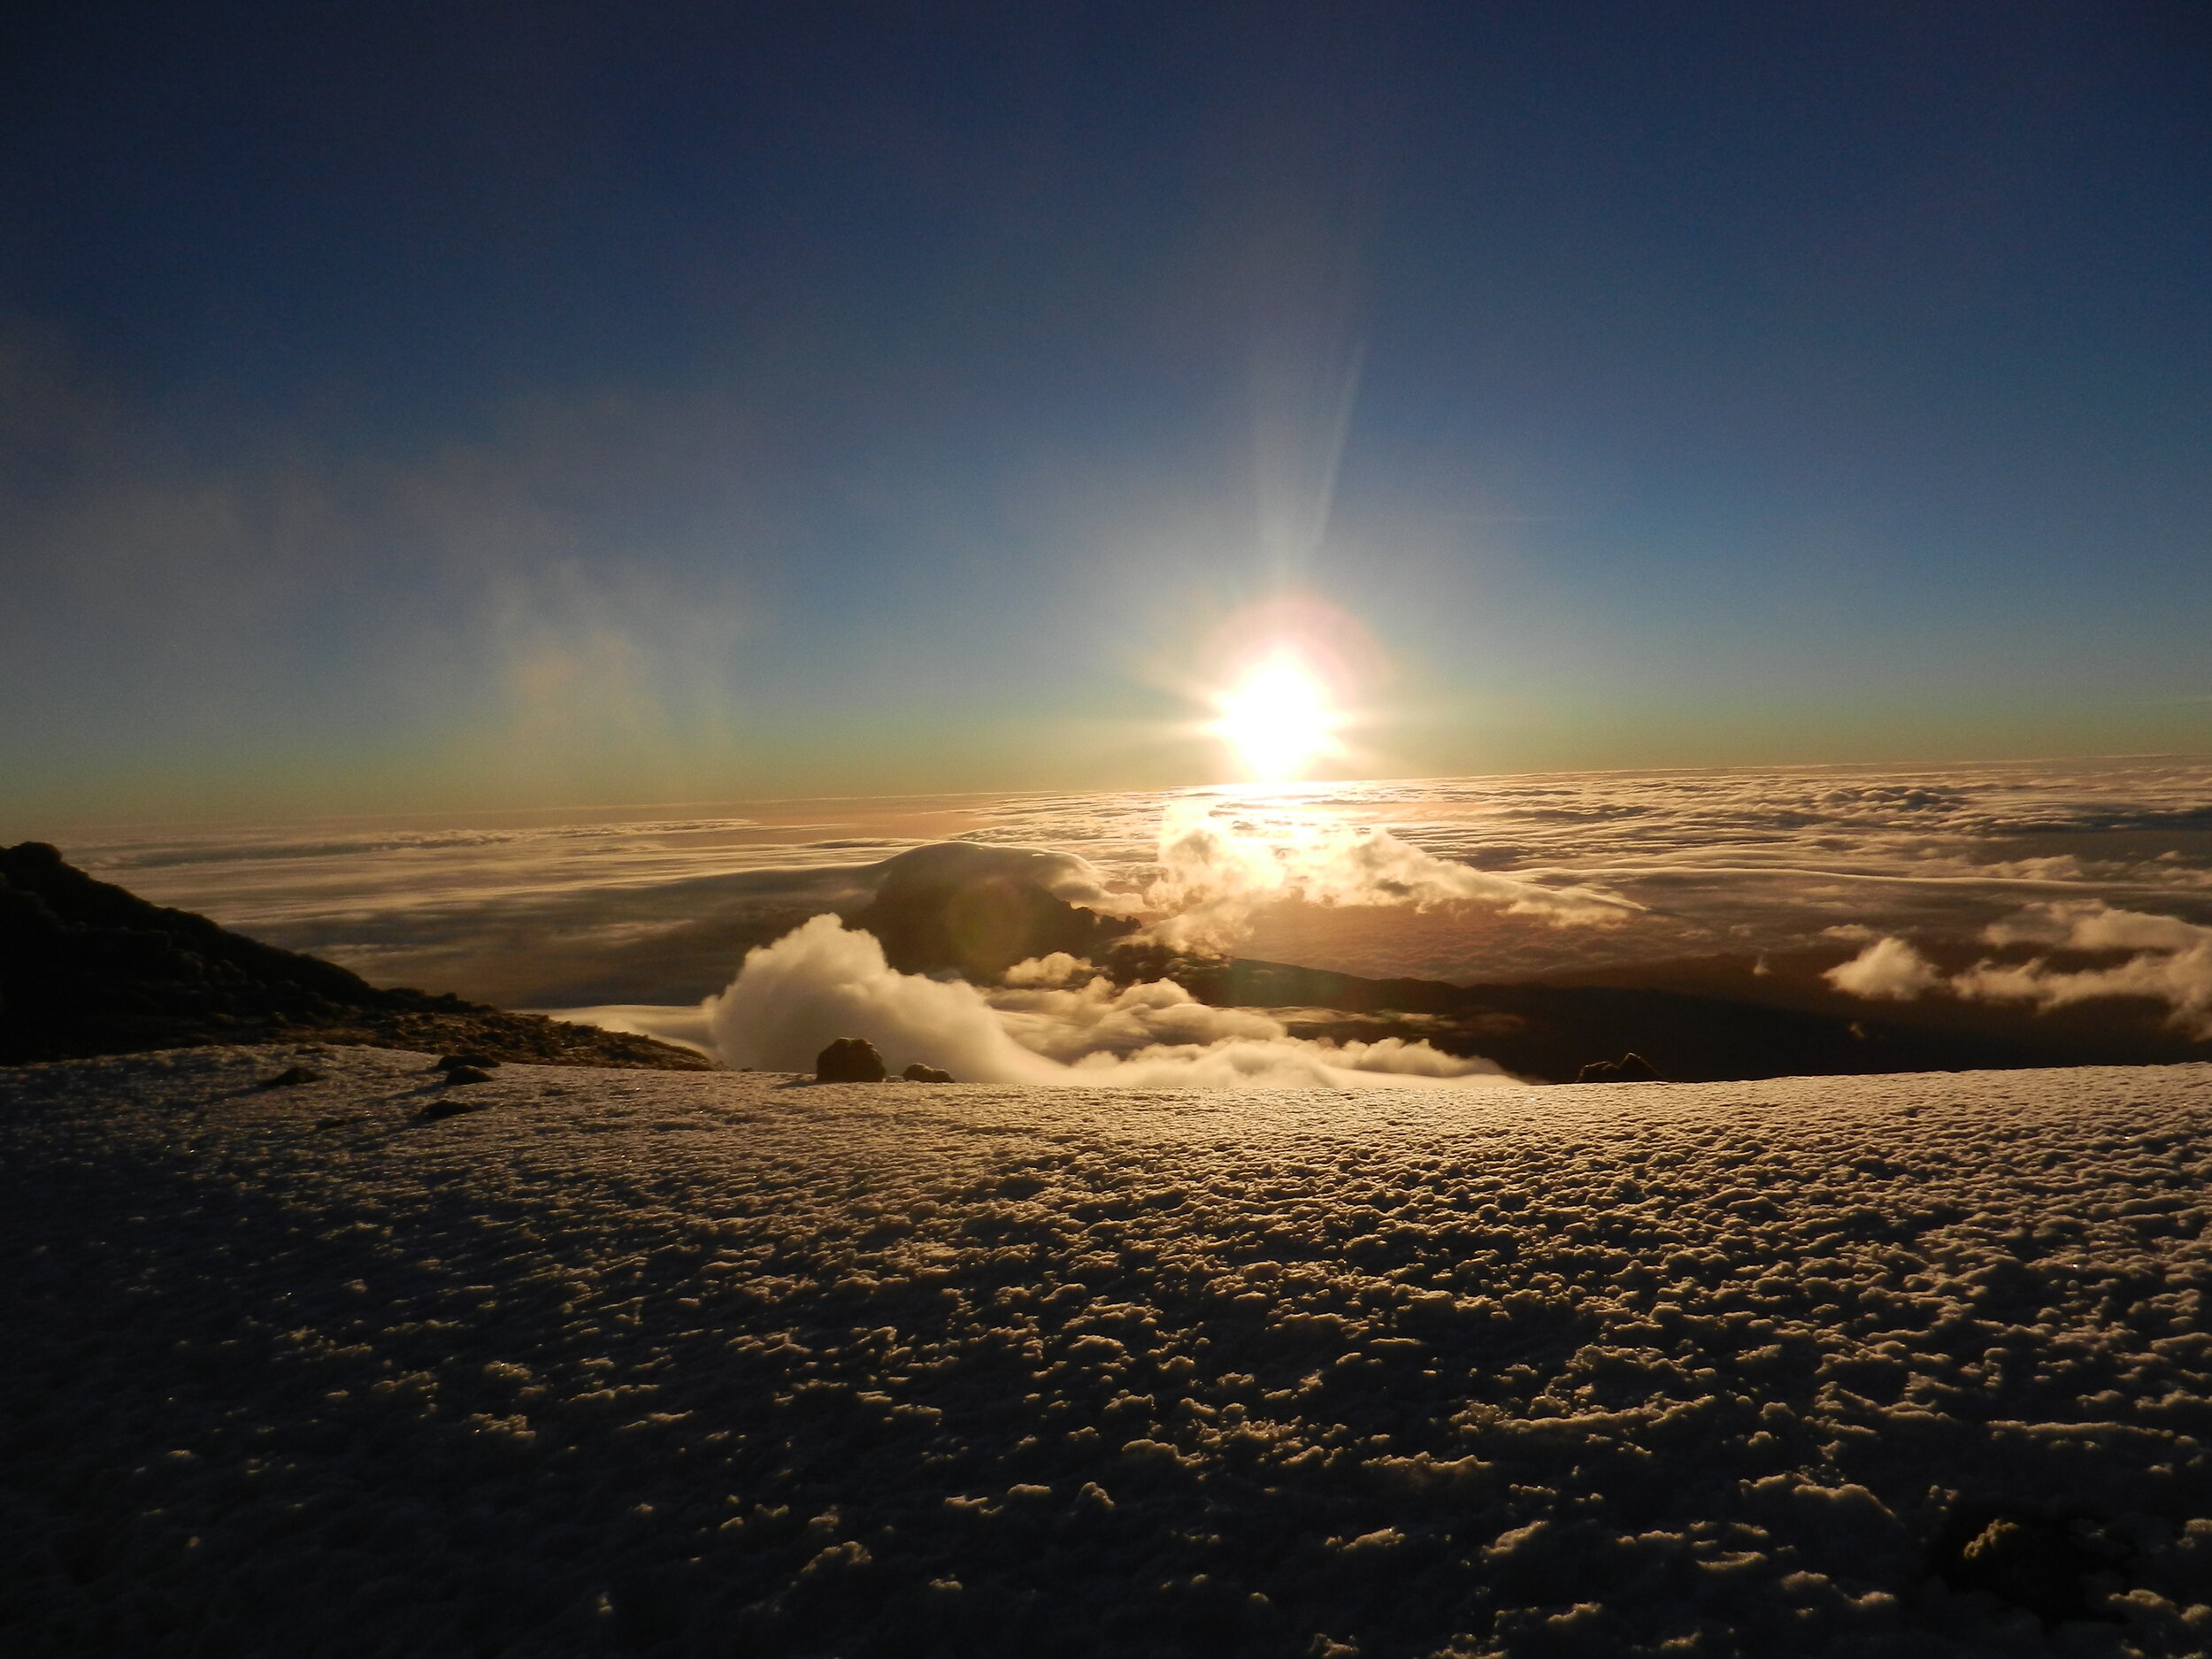 I snapped this photo at the summit of Mt. Kilimanjaro, Tanzania at 19,341 feet!